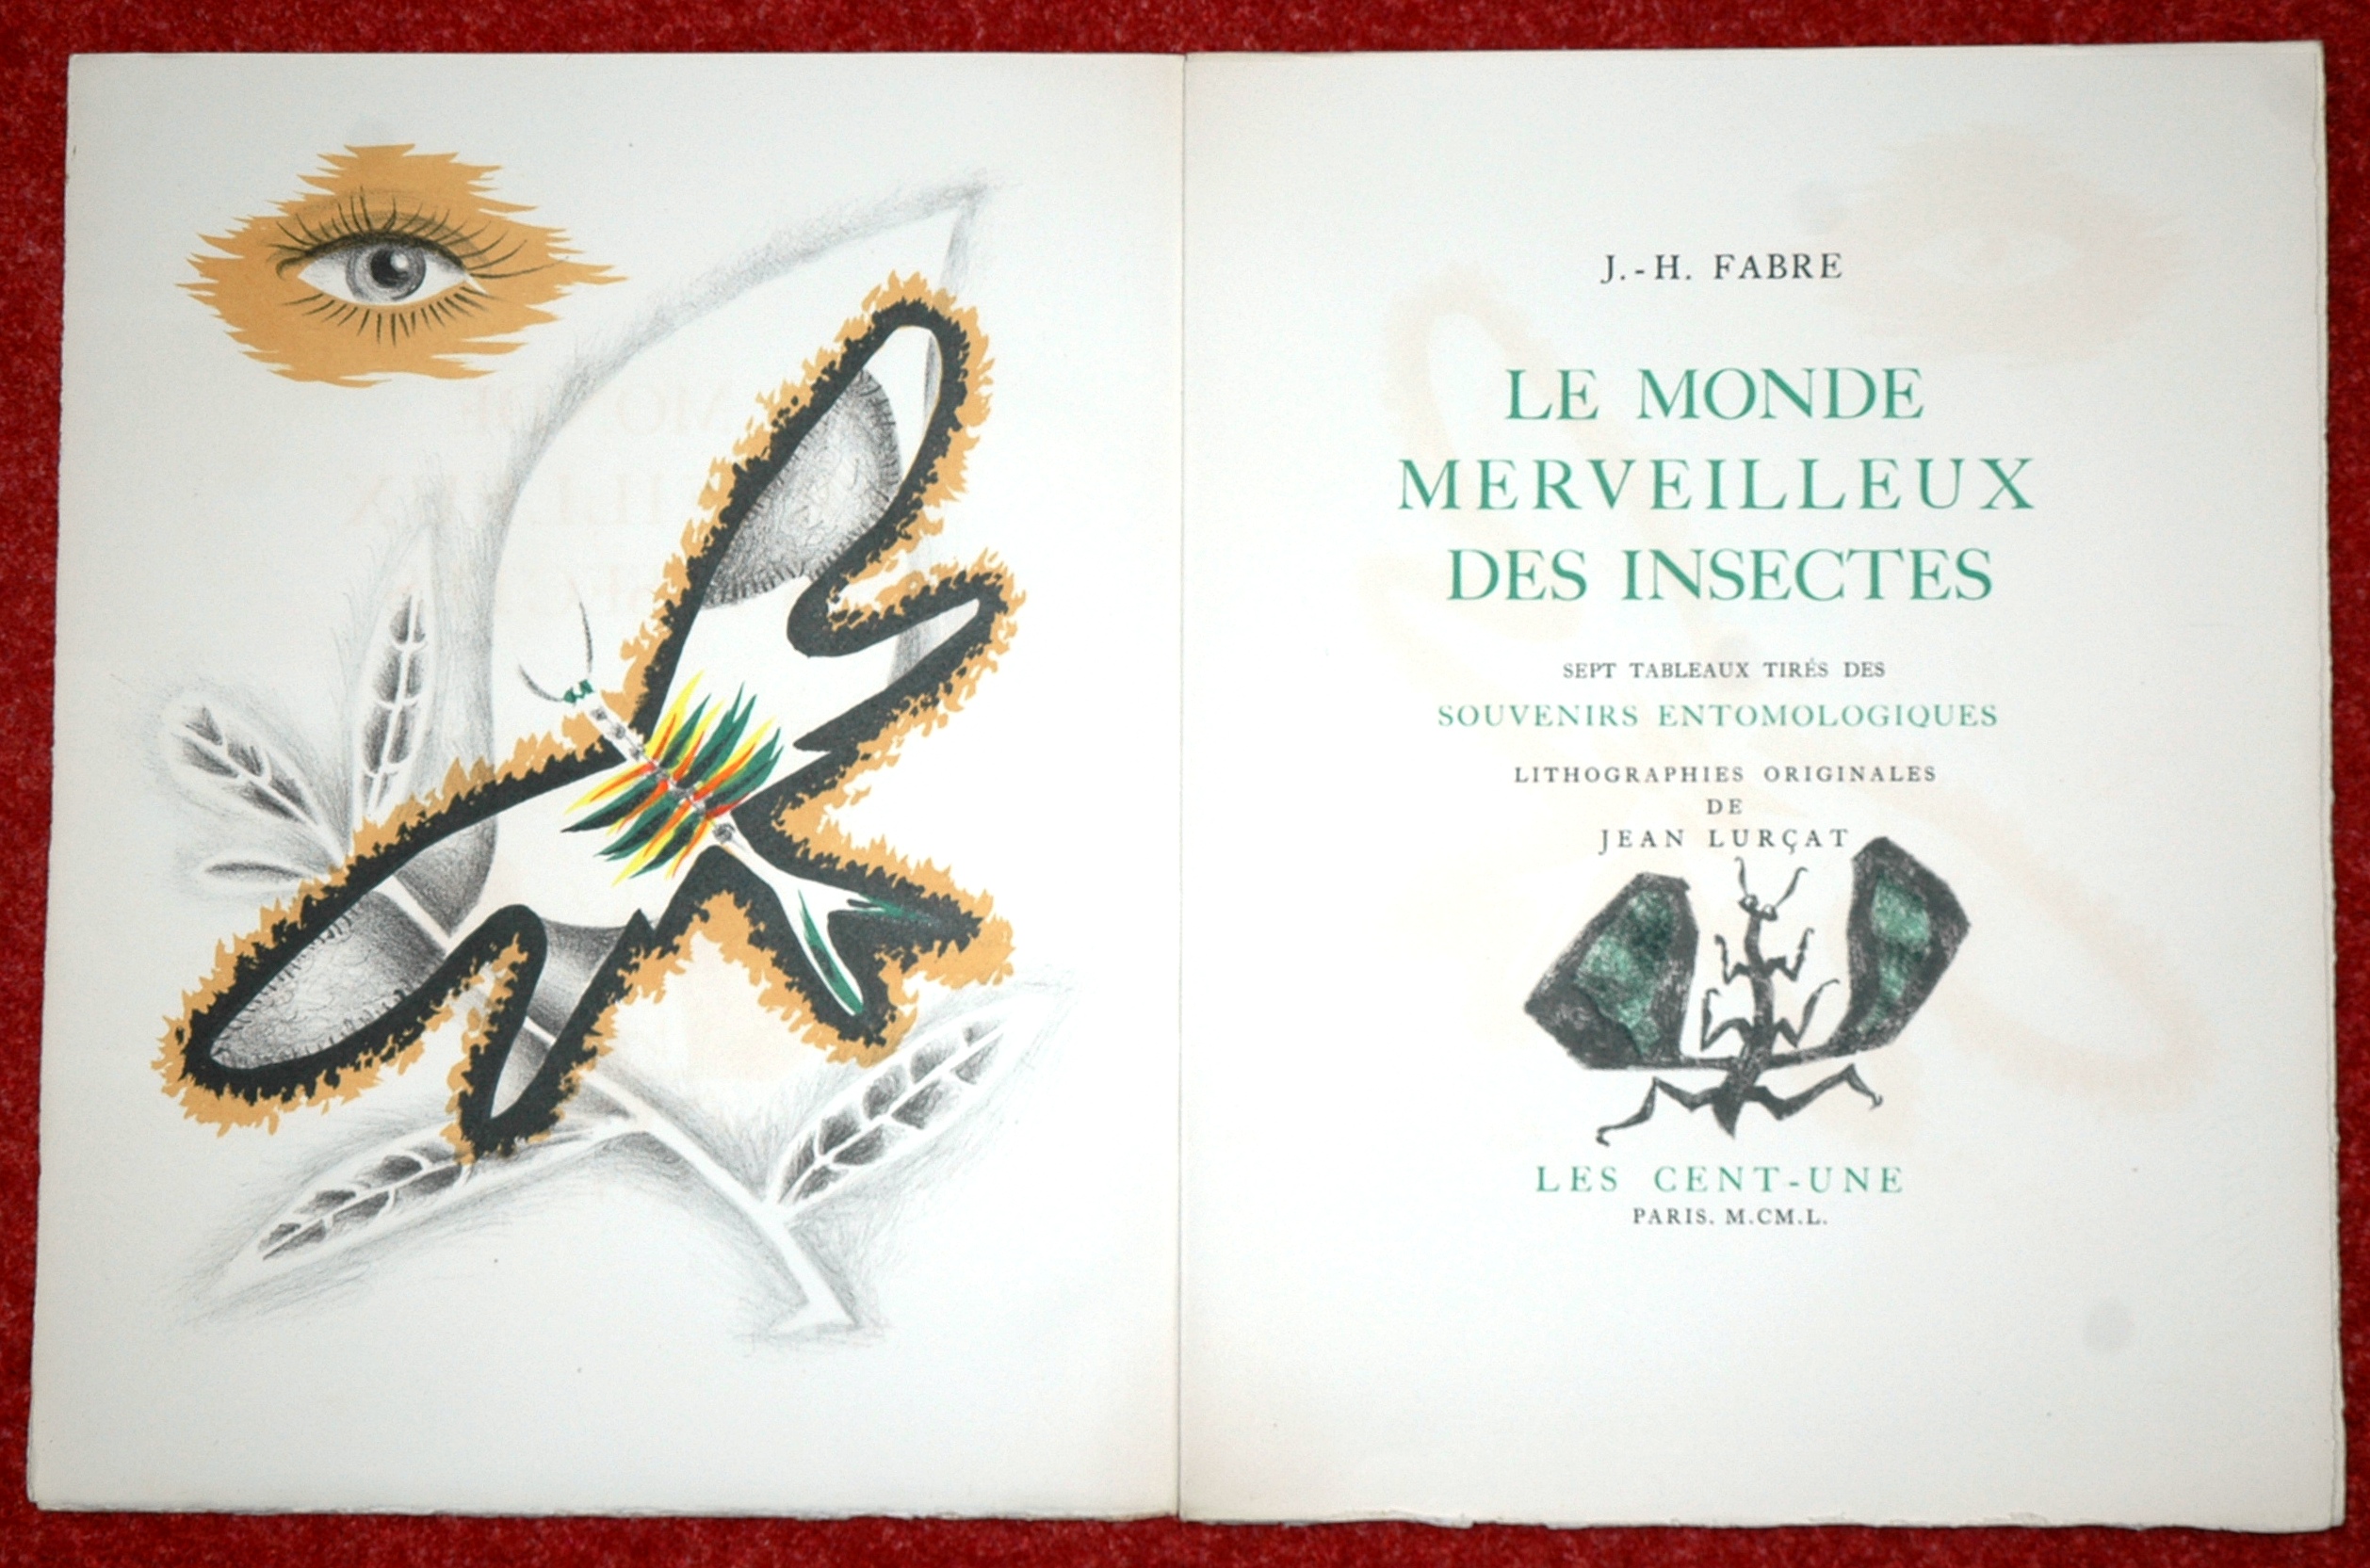 Le monde merveilleux des insectes, lithographie originale de Jean Lurçat